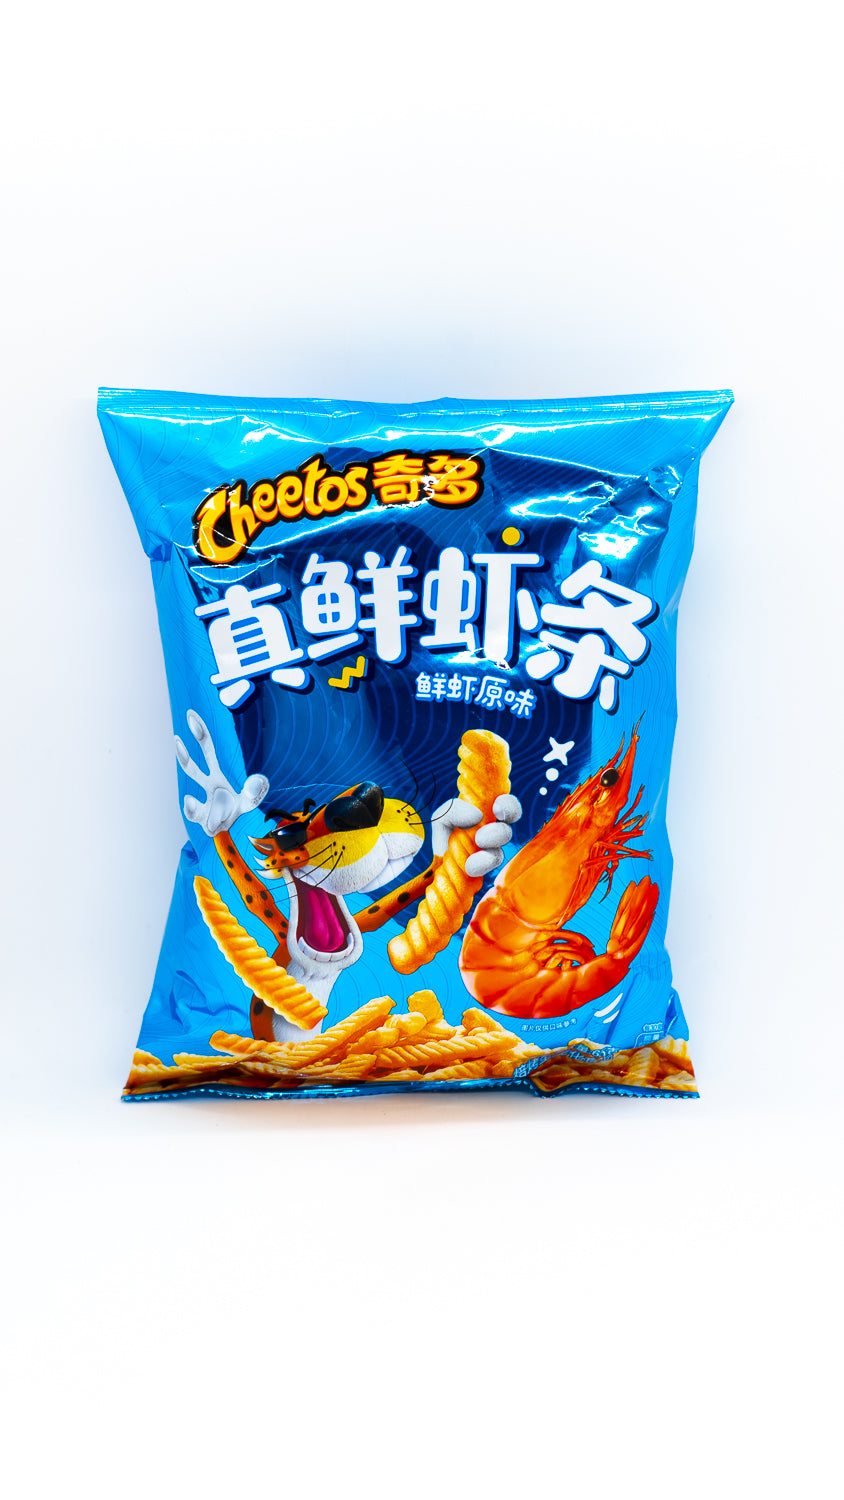 Cheetos enroulés aux crevettes